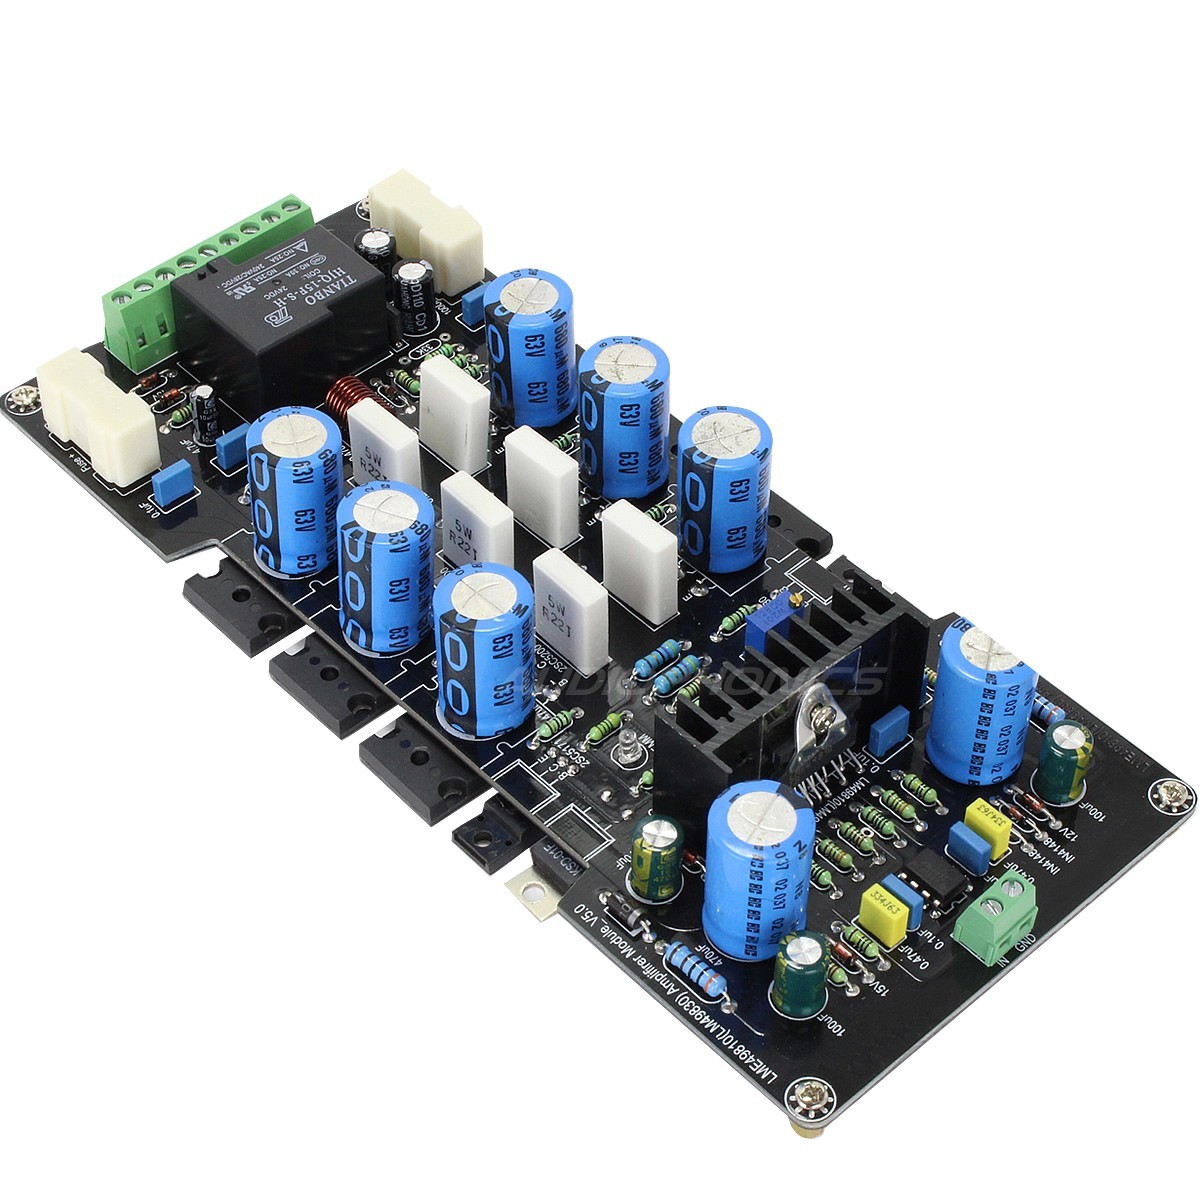 LME49810 2SC5200 Amplifier board 300W 8 ohm Mono (1 unit)